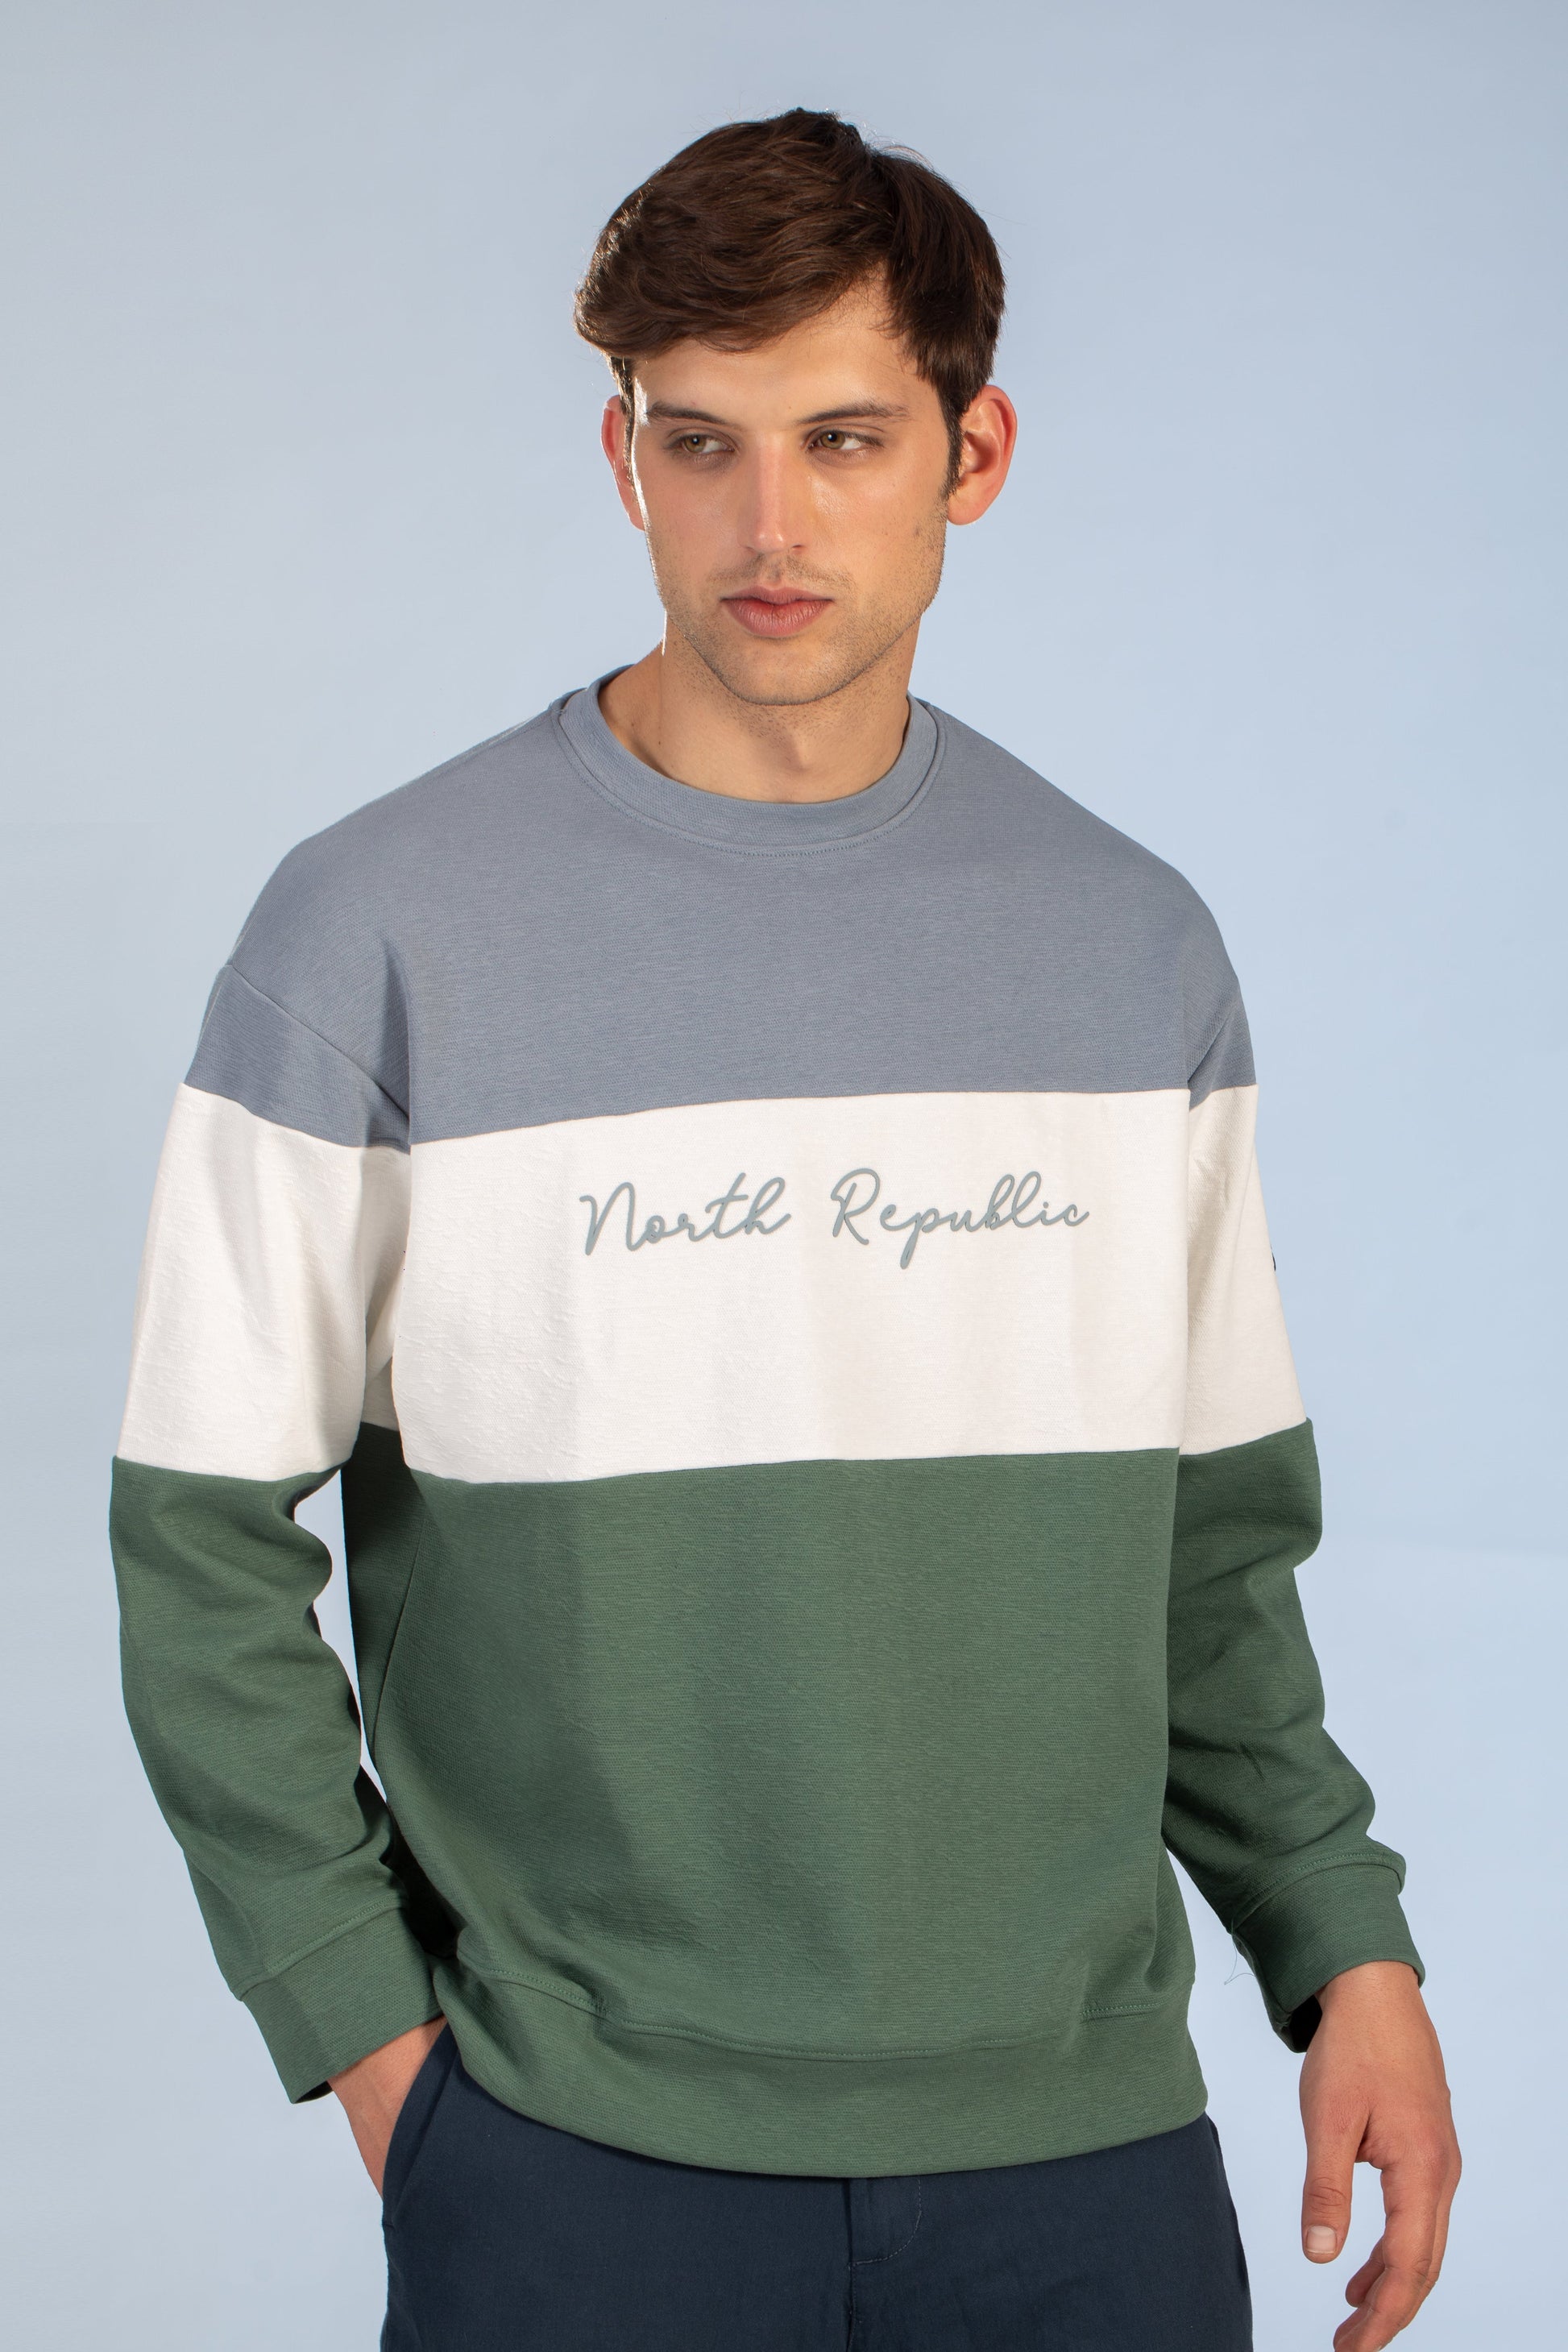 Tri-Tone Threads GWG Graphic Textured Men's Sweatshirts